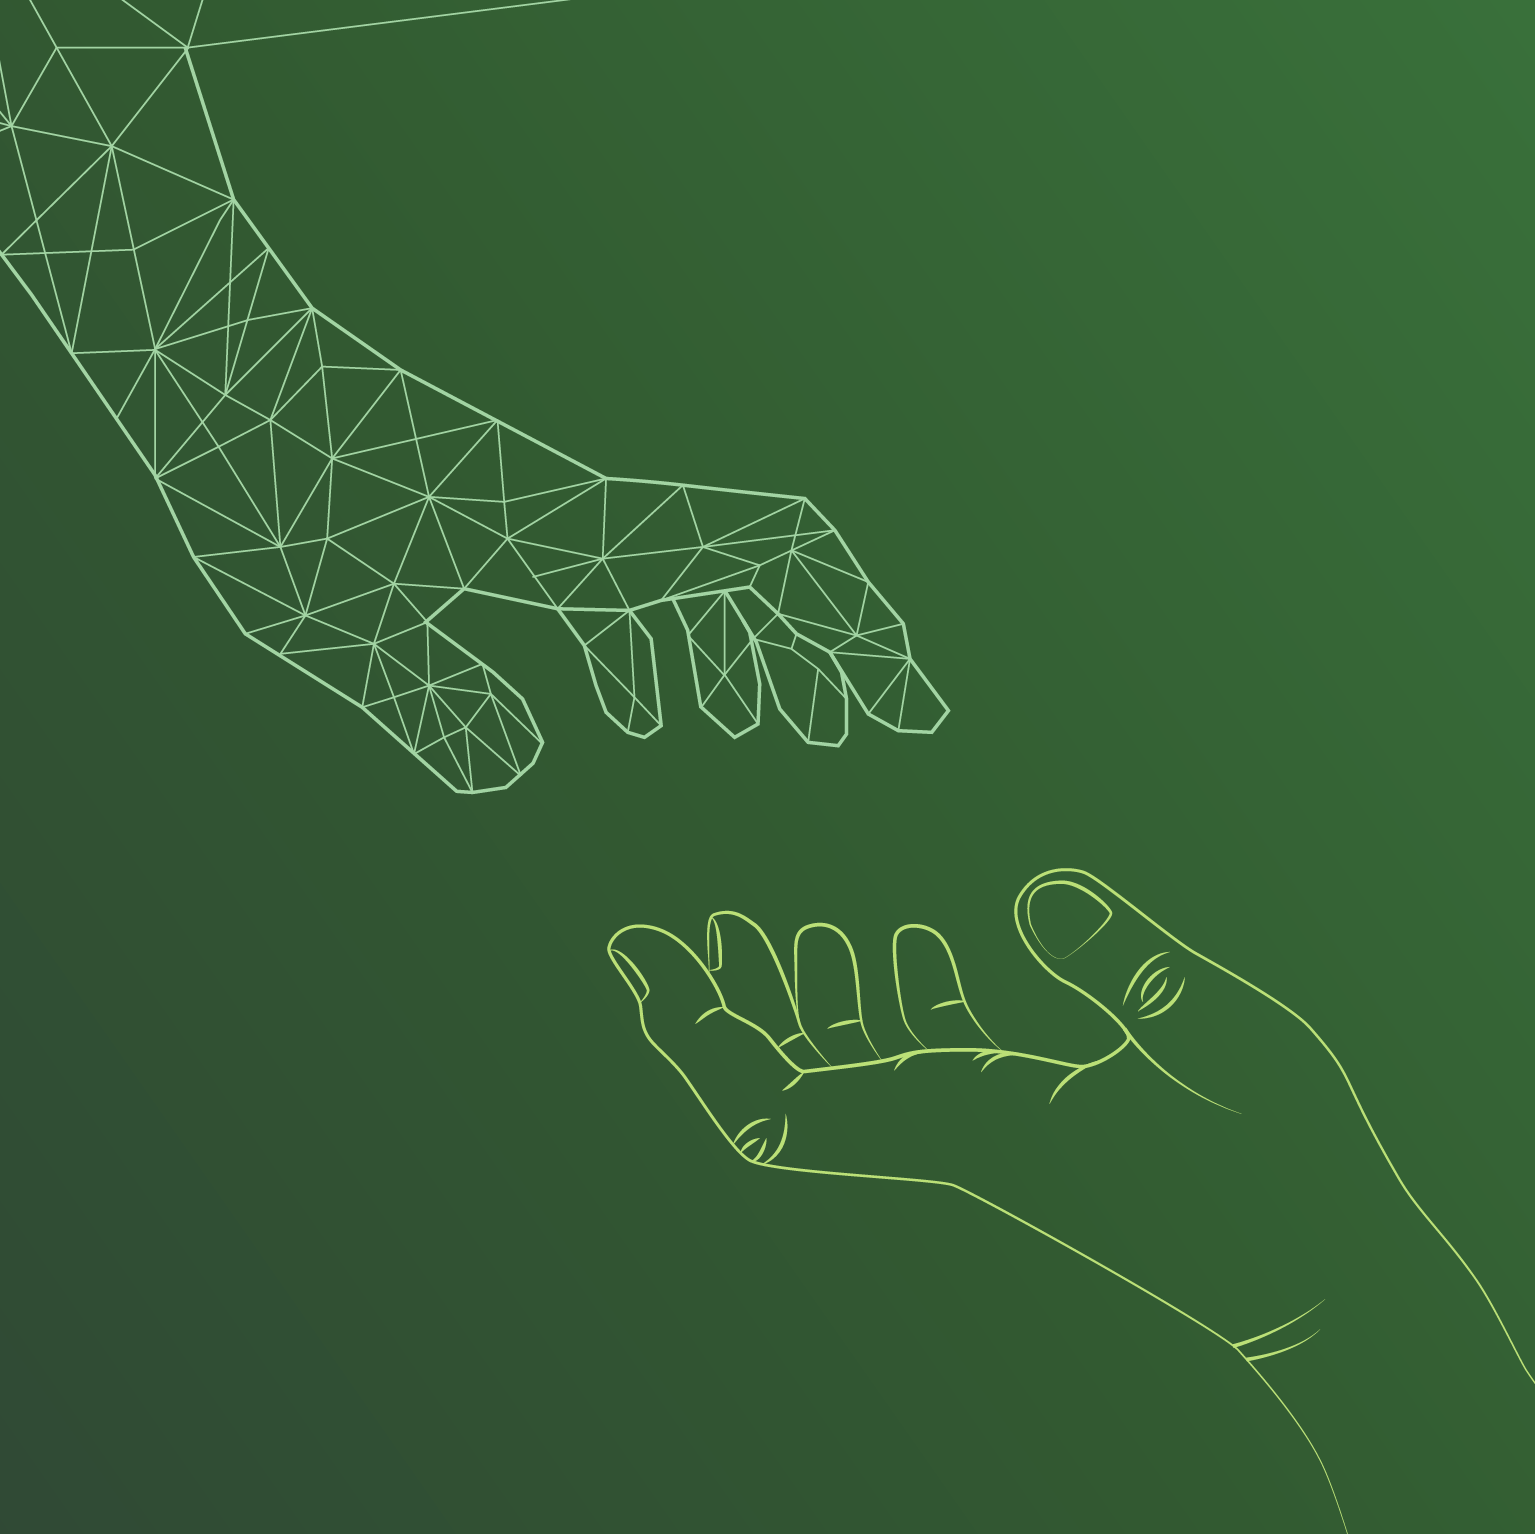 Illustration digitale und menschliche Hand